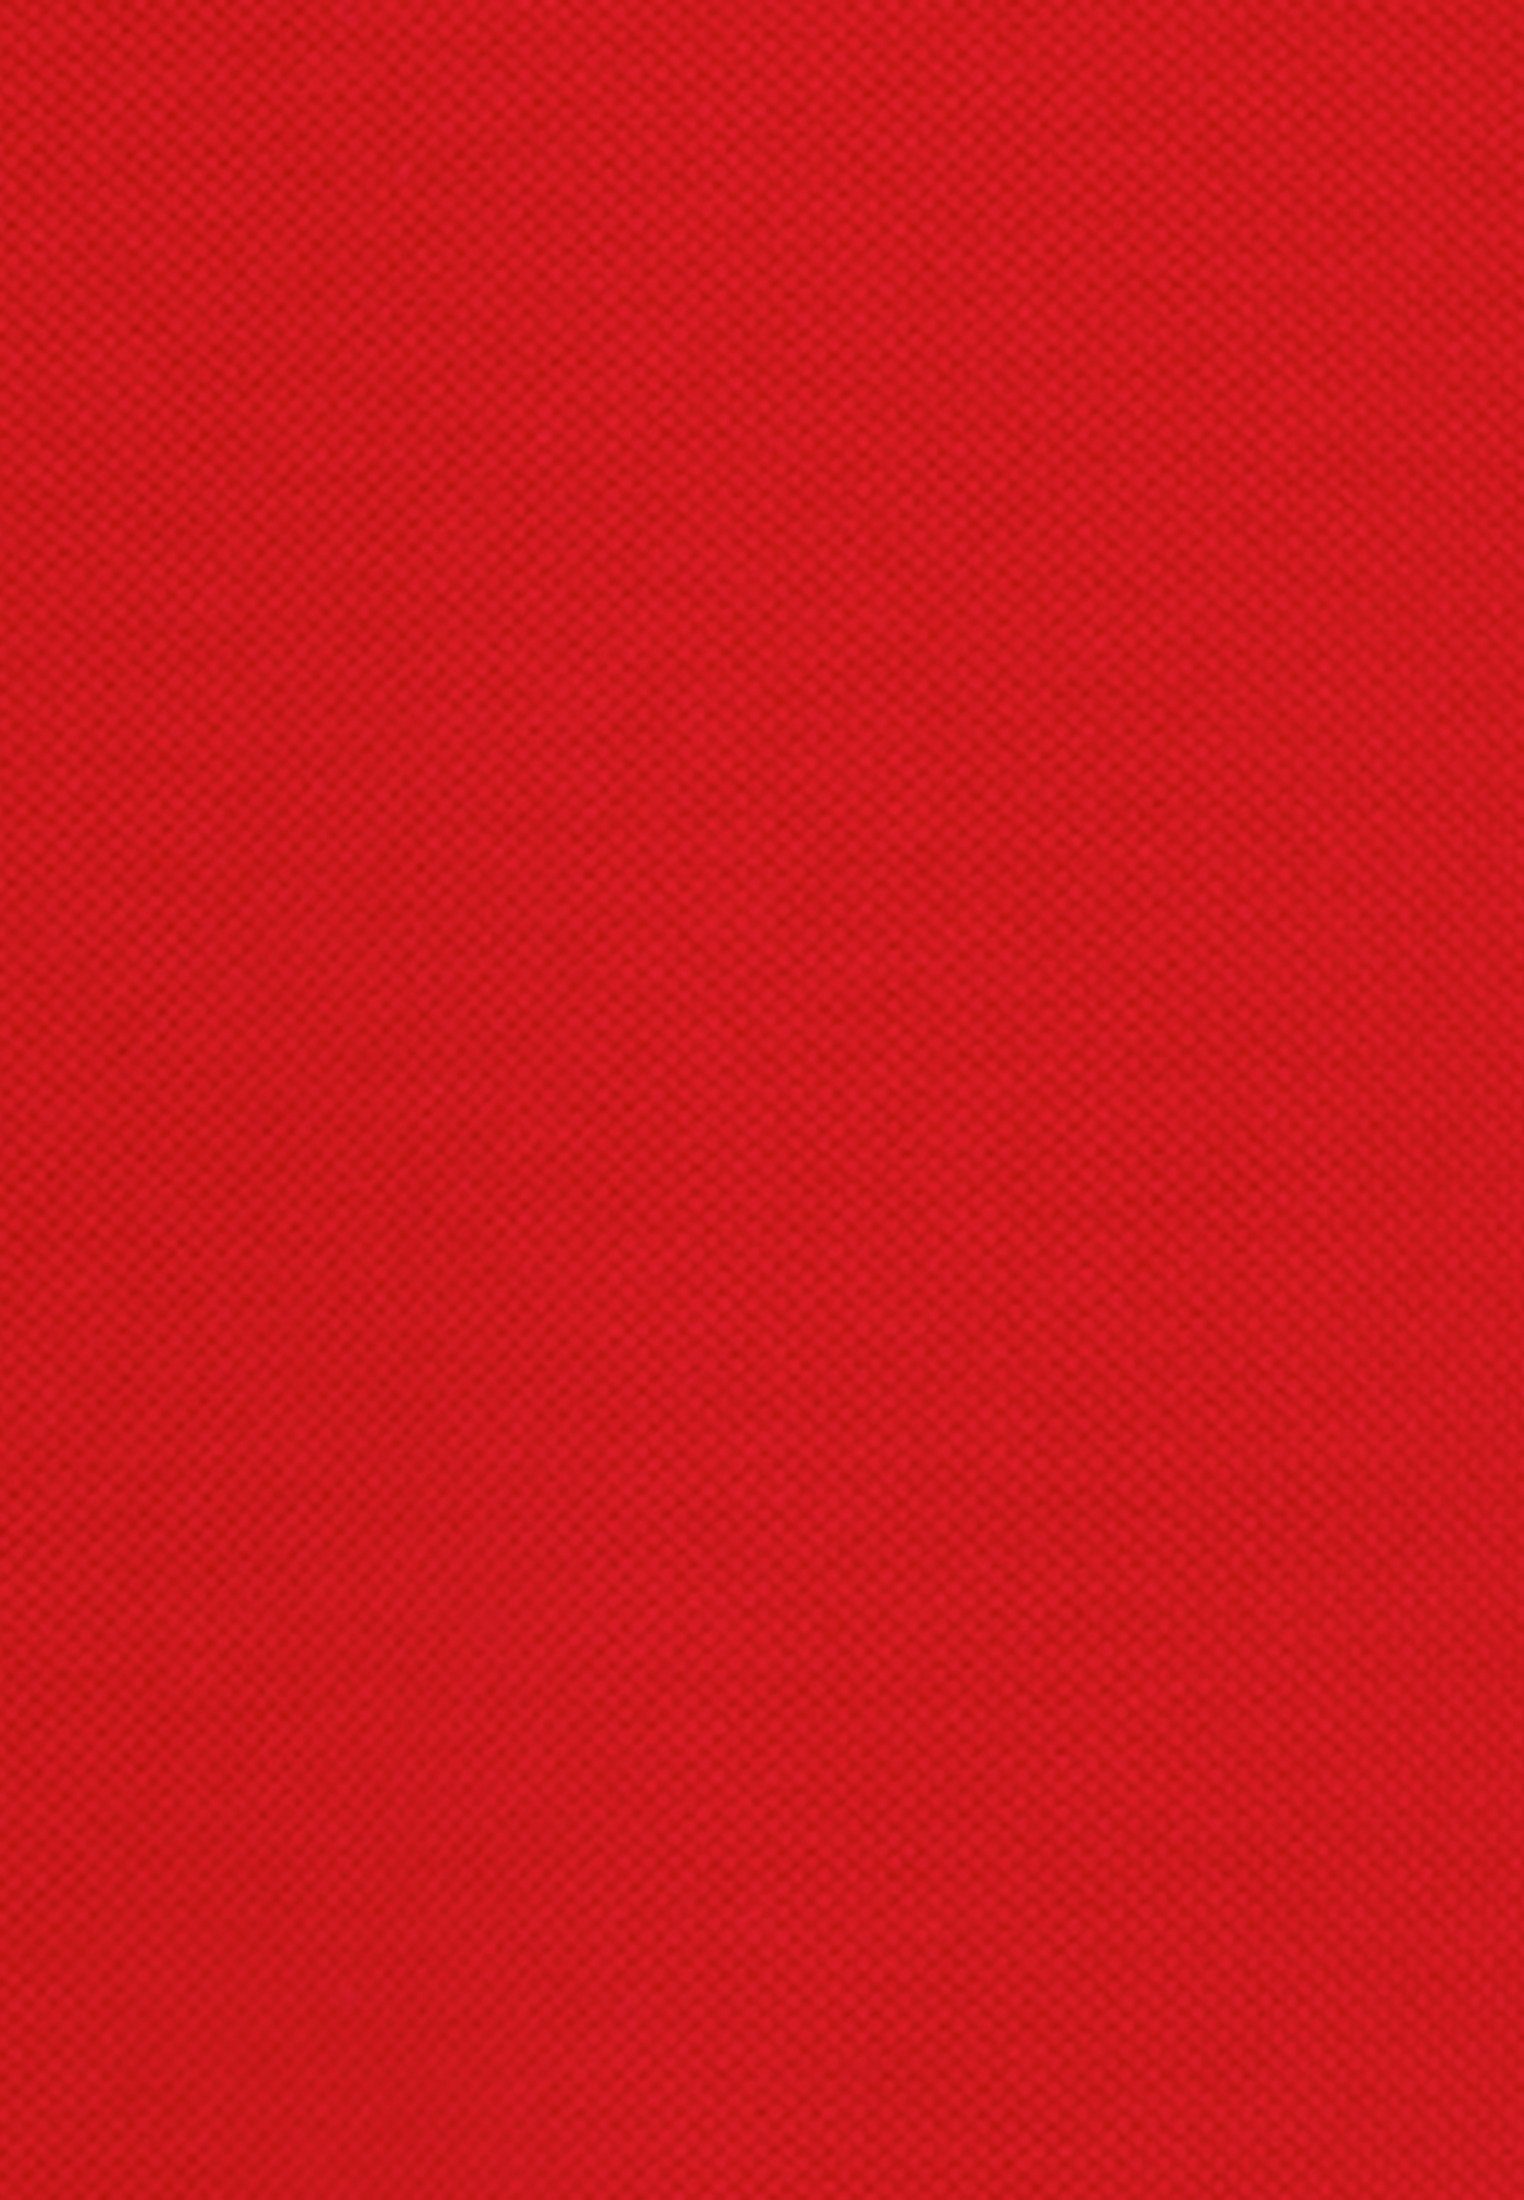 Regular seidensticker Uni Poloshirt Kragen Kurzarm Rot